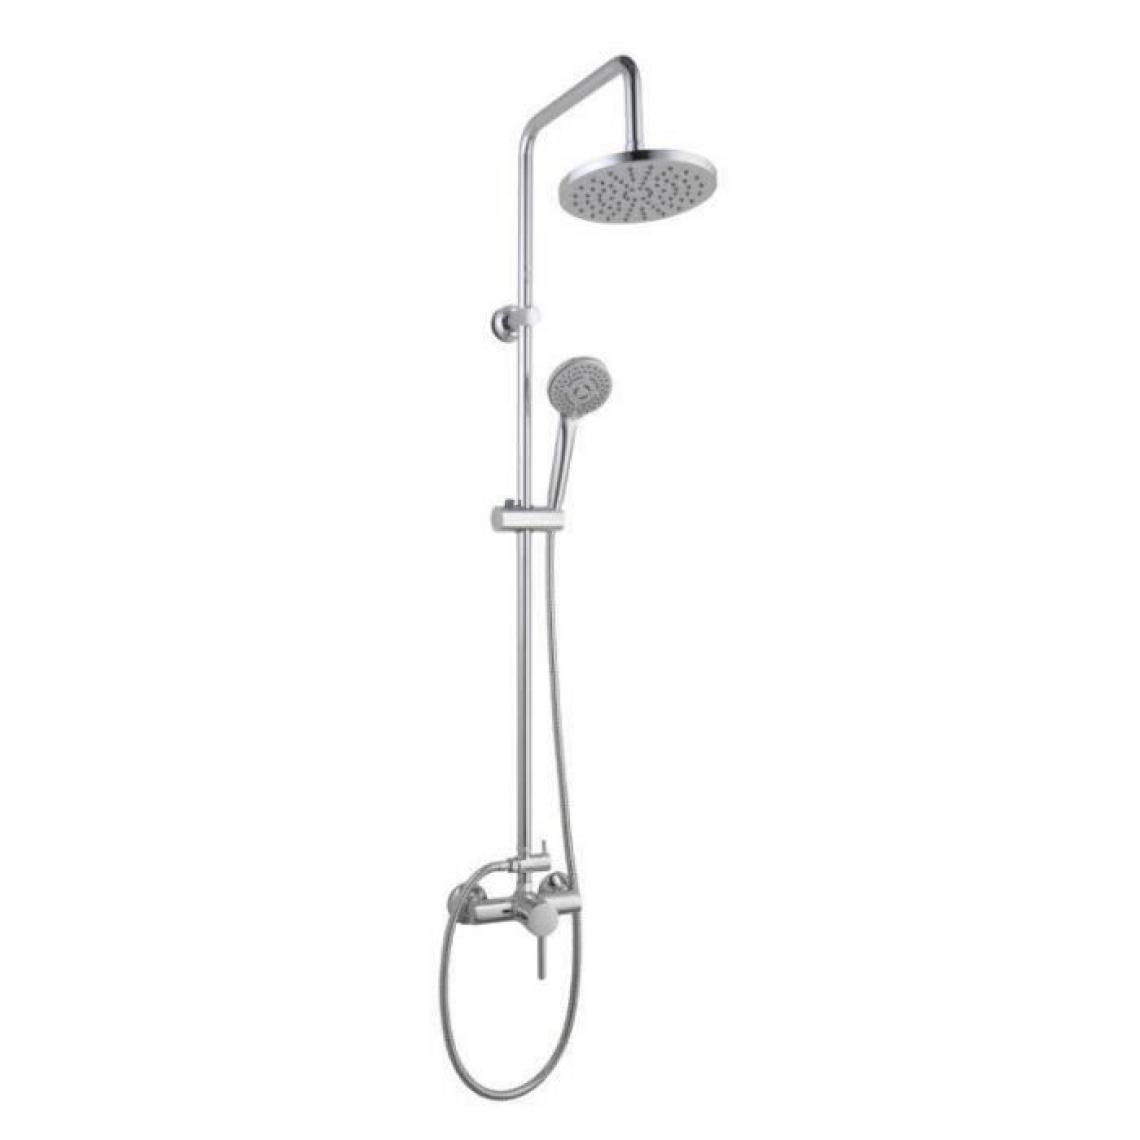 Rousseau - Colonne de douche avec robinet mitigeur mécanique Timaru chrome - Colonne de douche